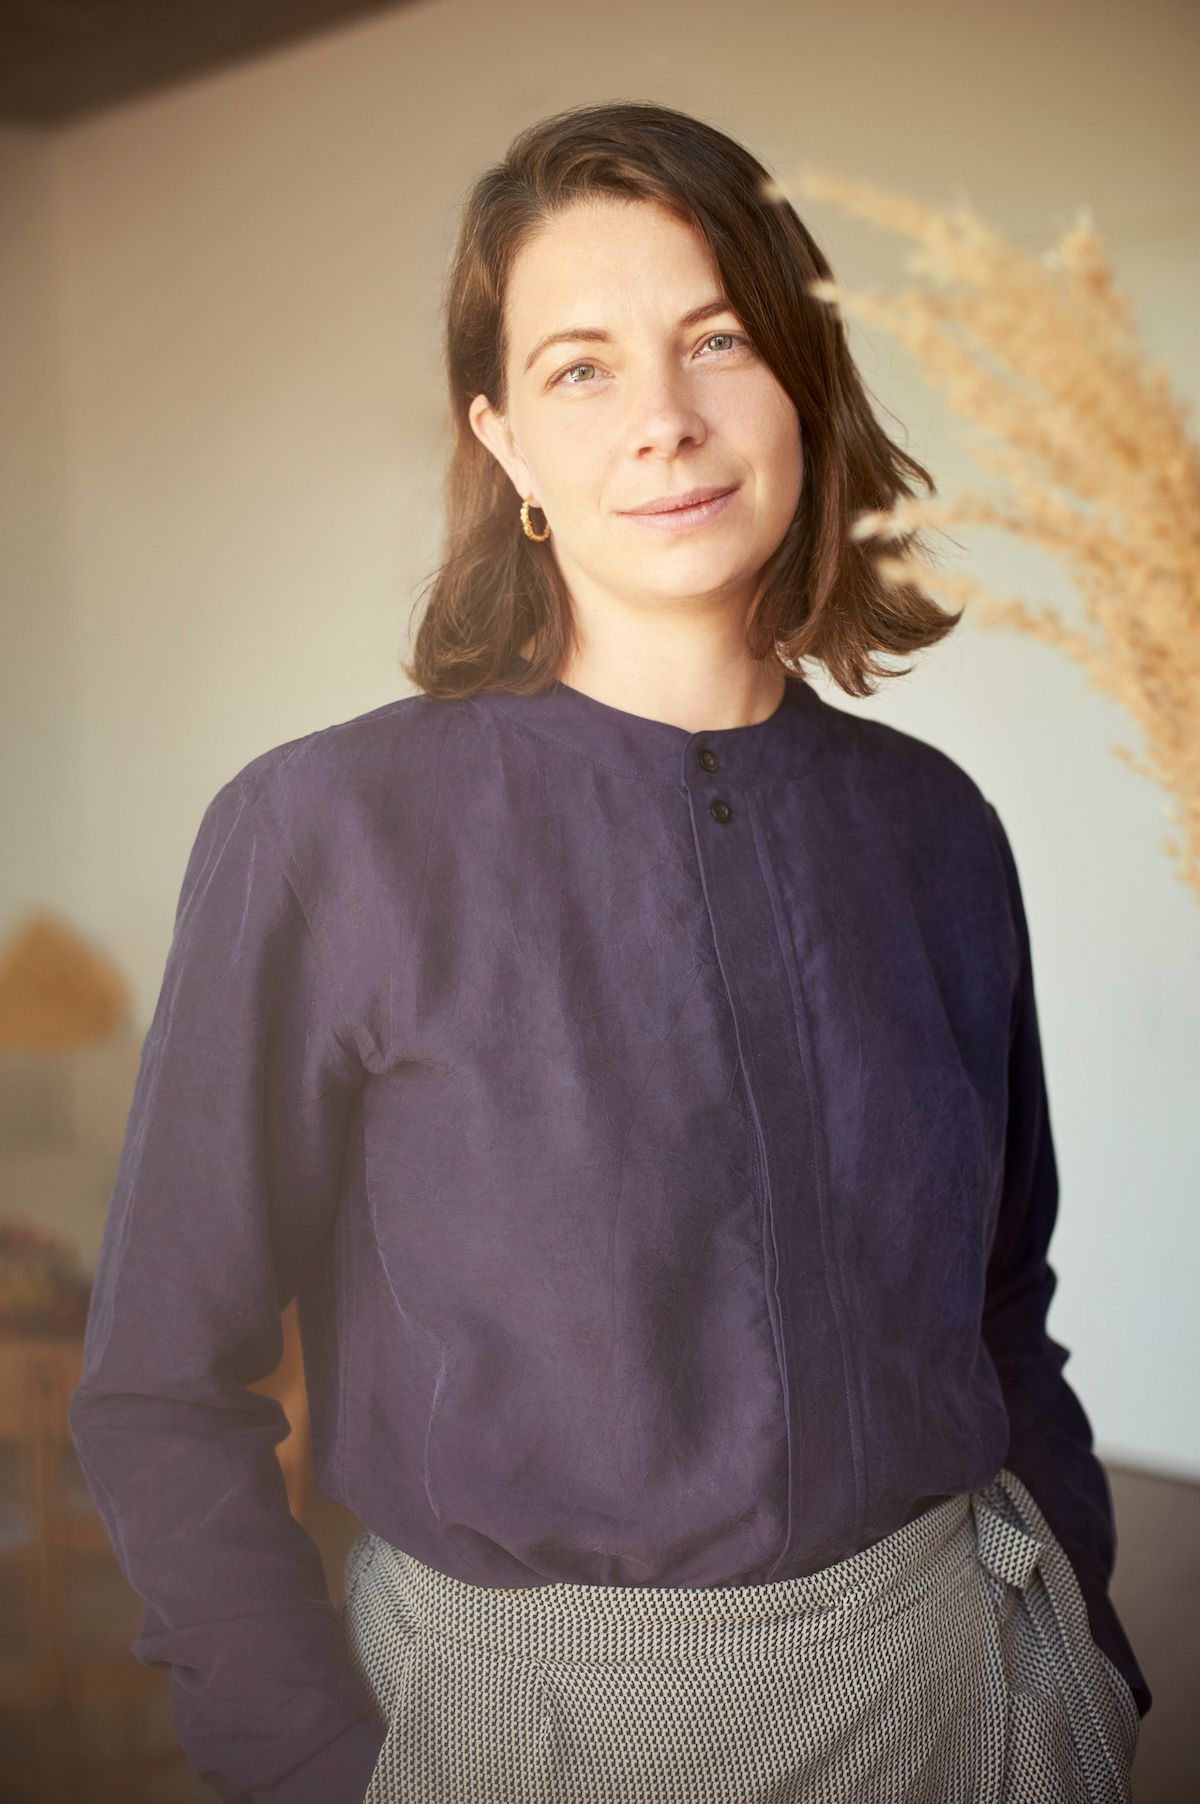 Lisa Jaspers hat 2013 das Label Folkdays gegründet, das fair-nachhaltige Designprodukte vertreibt. Zuvor arbeitete sie unter anderem für Oxfam, wo sie Naomi Ryland kennenlernte. Foto: Lena Schröder 